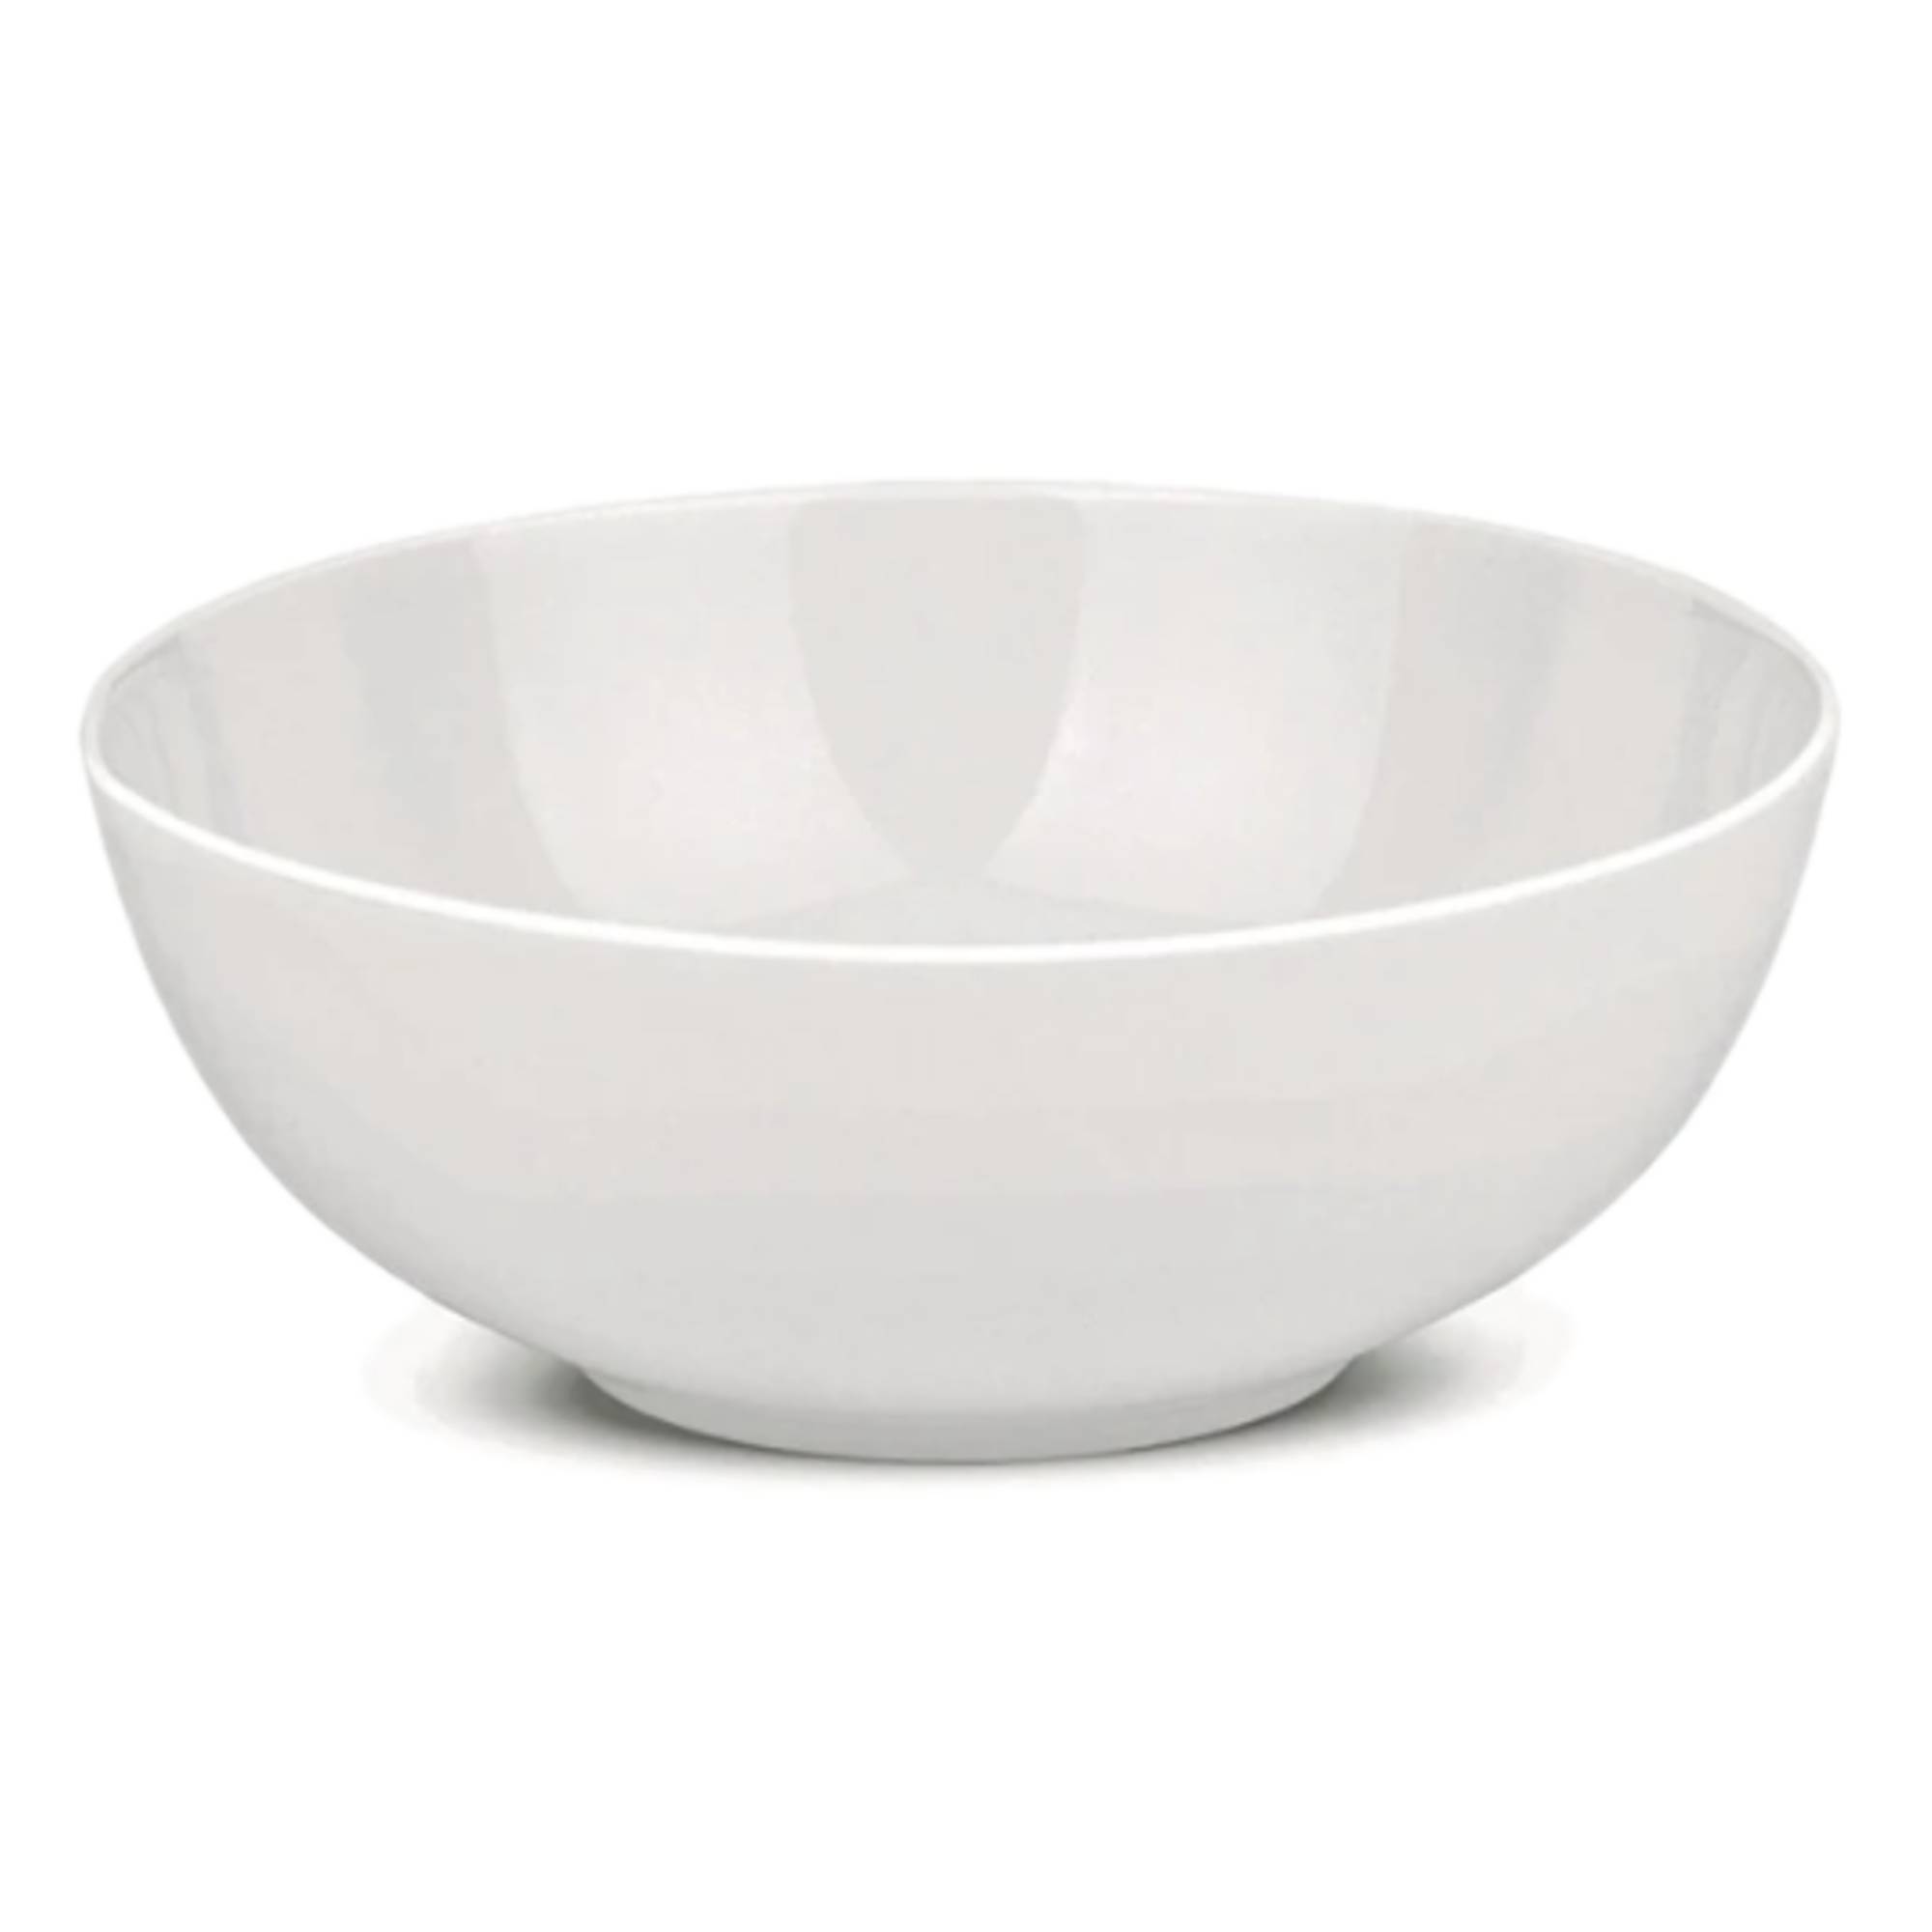 service de table moderne, porcelaine blanche - Serax- Base Piet Boon